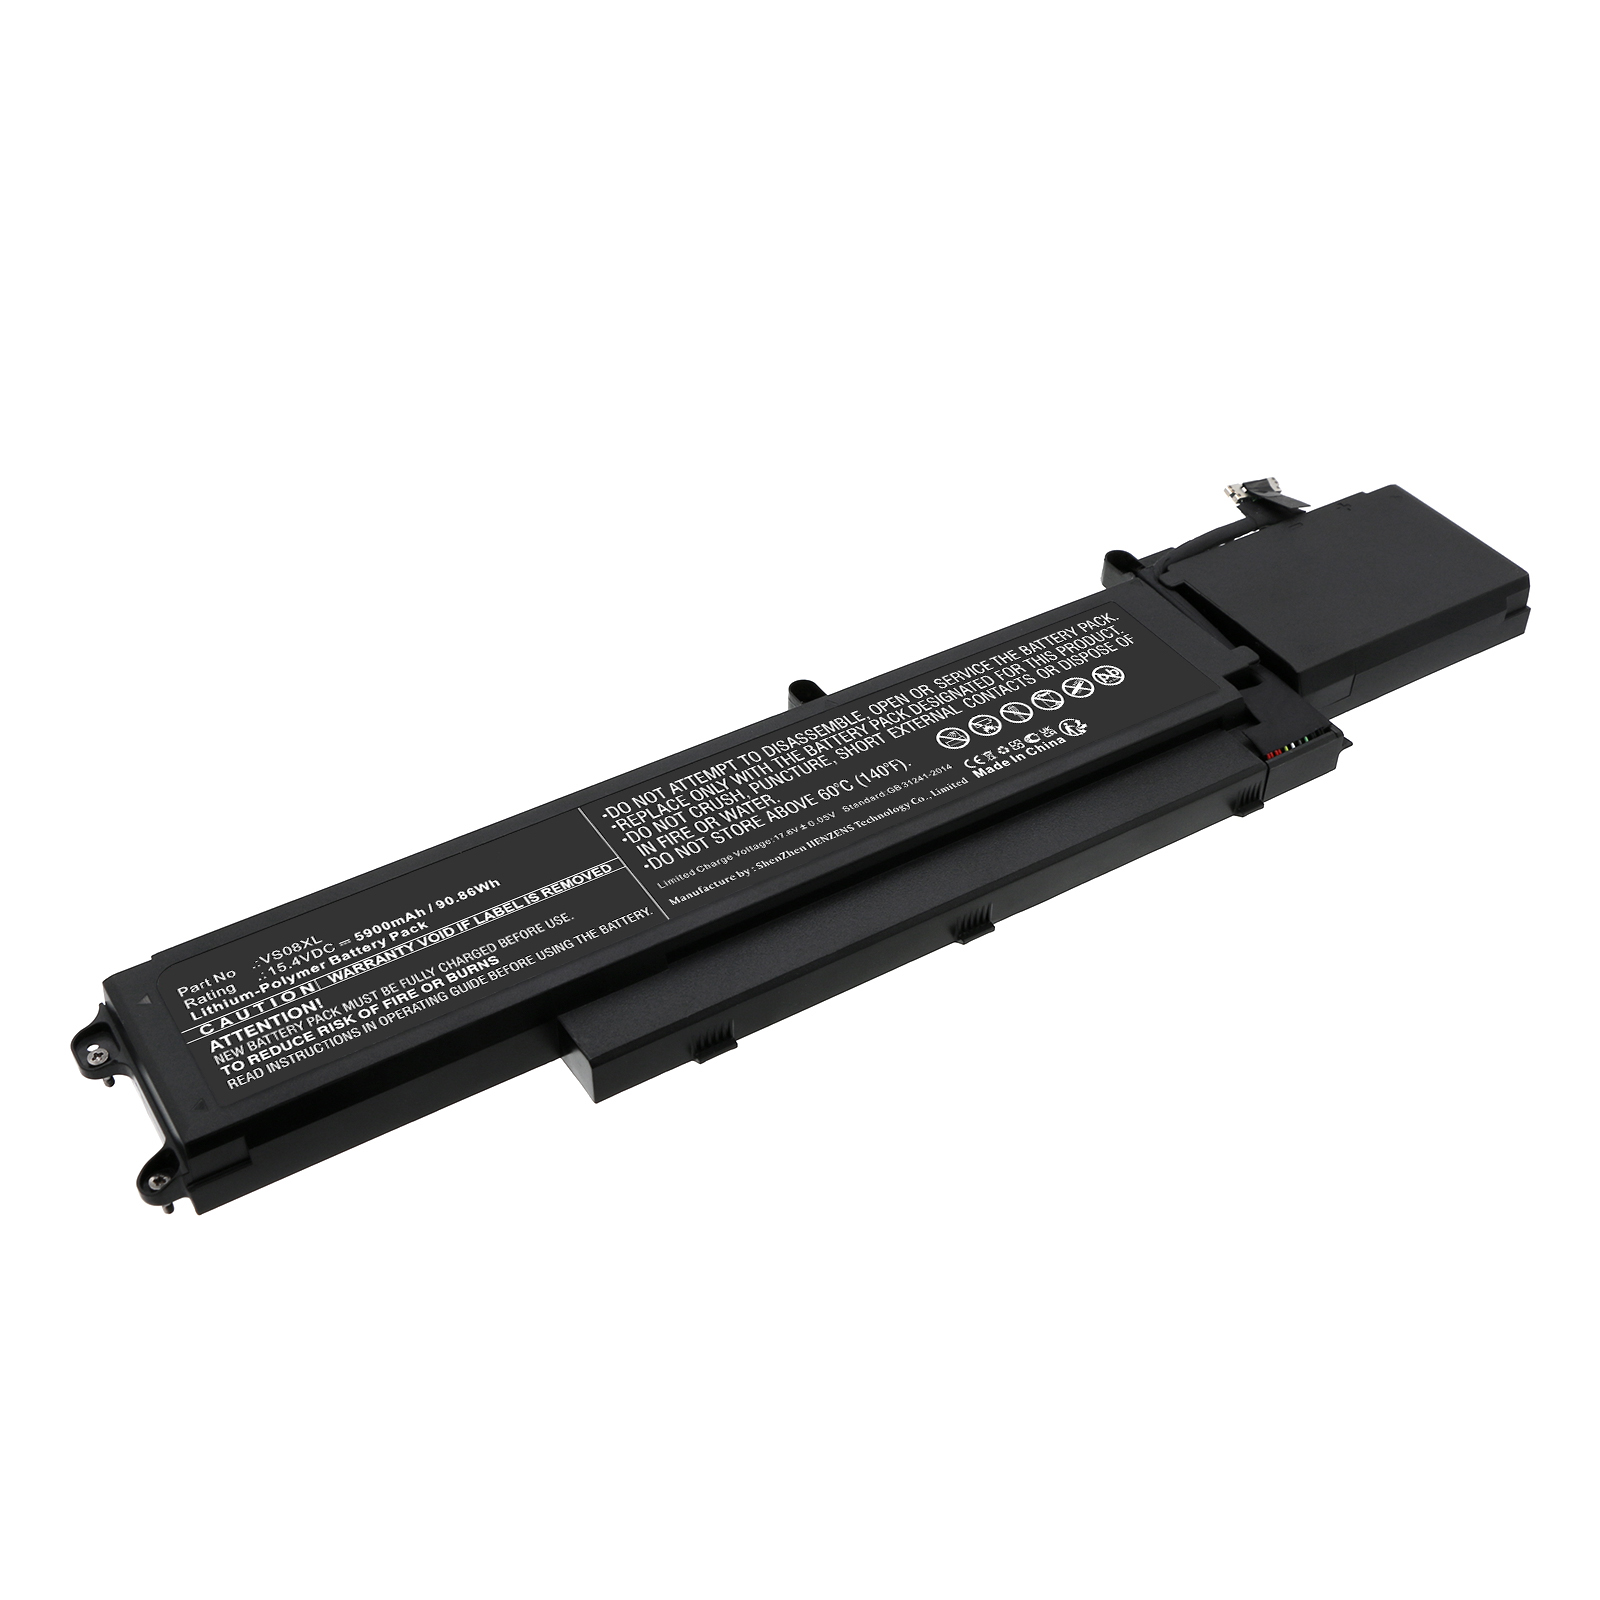 Synergy Digital Laptop Battery, Compatible with HP VS08XL Laptop Battery (Li-Pol, 15.4V, 5900mAh)